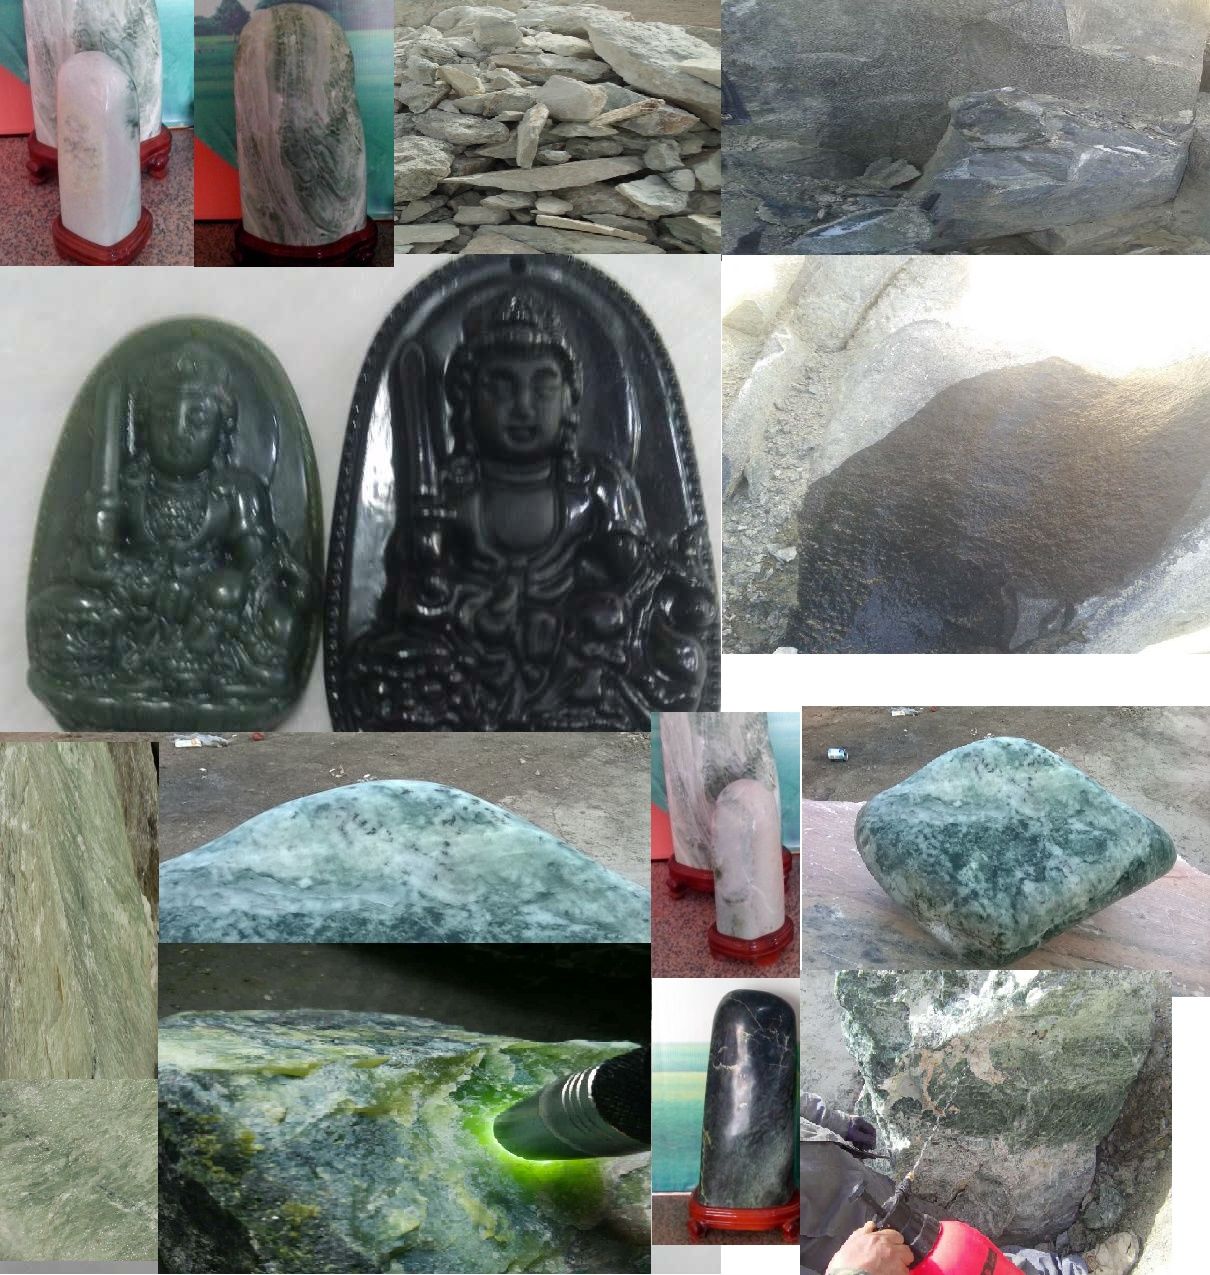 Xinjiang Uygur Autonomous Region Turpan City jade stone culture Co. Ltd.